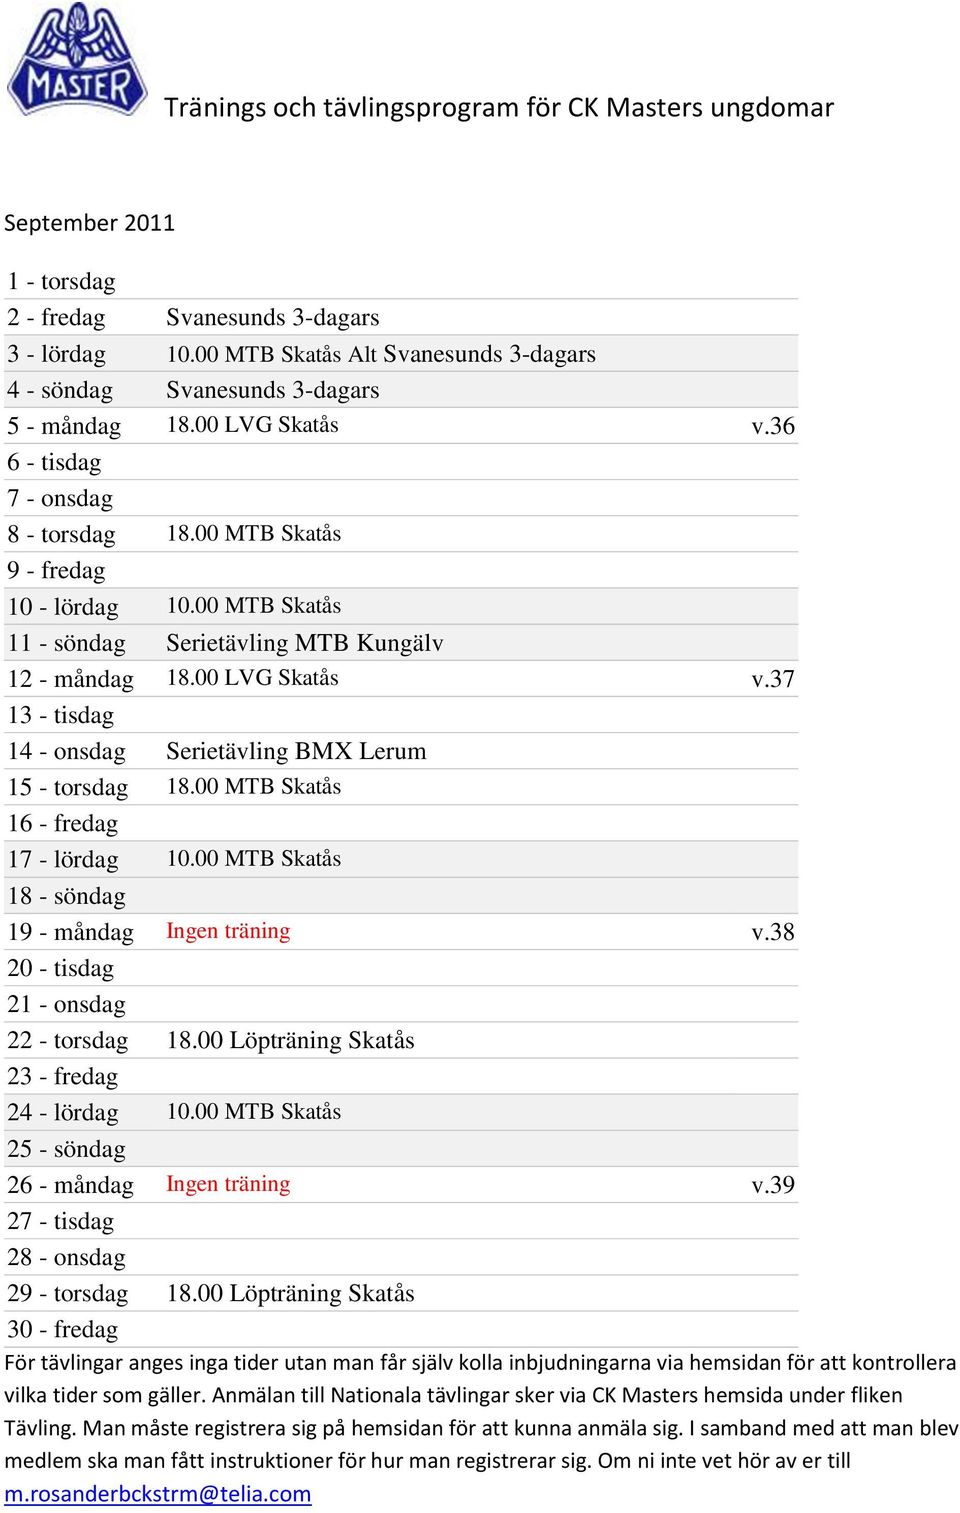 37 13 - tisdag 14 - onsdag Serietävling BMX Lerum 15 - torsdag 18.00 MTB Skatås 16 - fredag 17 - lördag 10.00 MTB Skatås 18 - söndag 19 - måndag Ingen träning v.